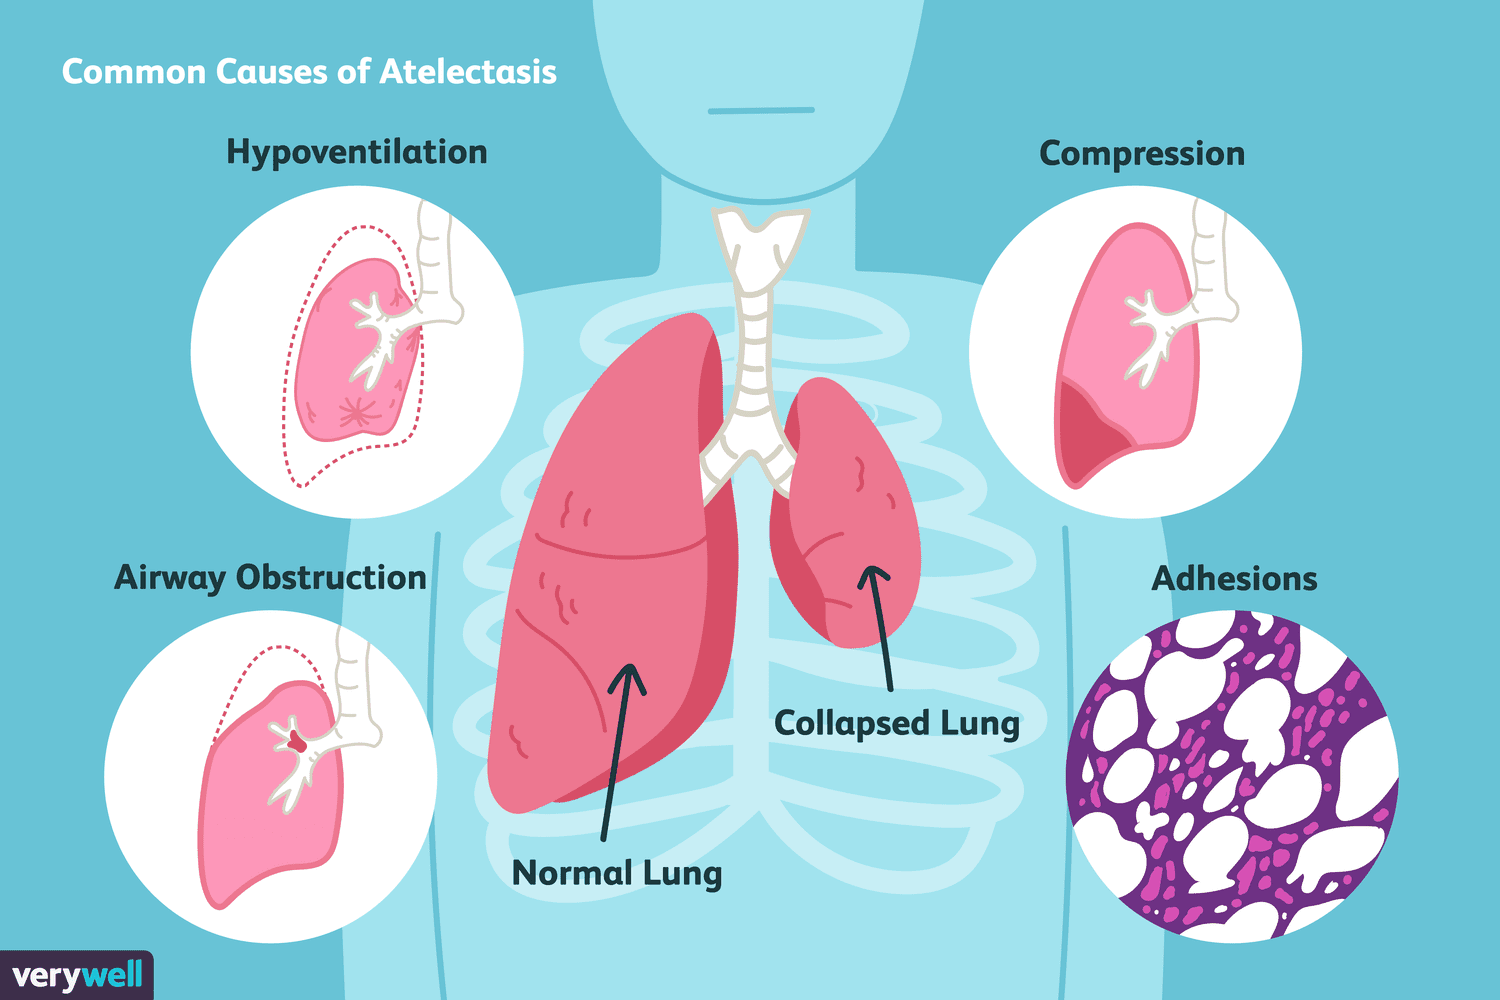 Bibasilar Atelectasis: Symptoms, Treatment, and More